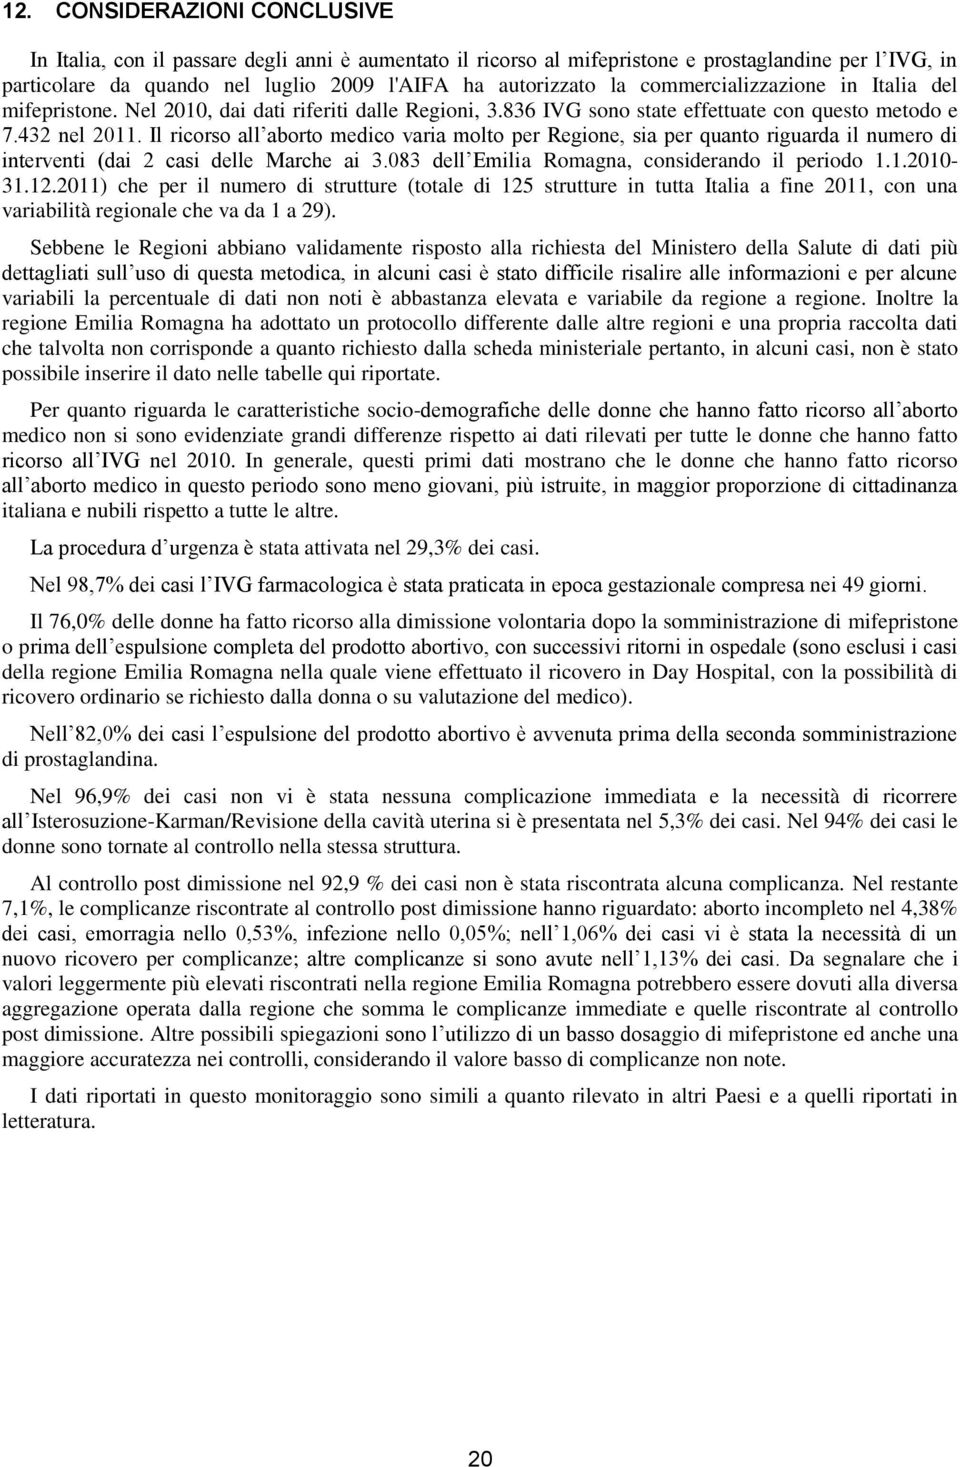 Il ricorso all aborto medico varia molto per Regione, sia per quanto riguarda il numero di interventi (dai 2 casi delle Marche ai 3.083 dell Emilia Romagna, considerando il periodo 1.1.2010-31.12.